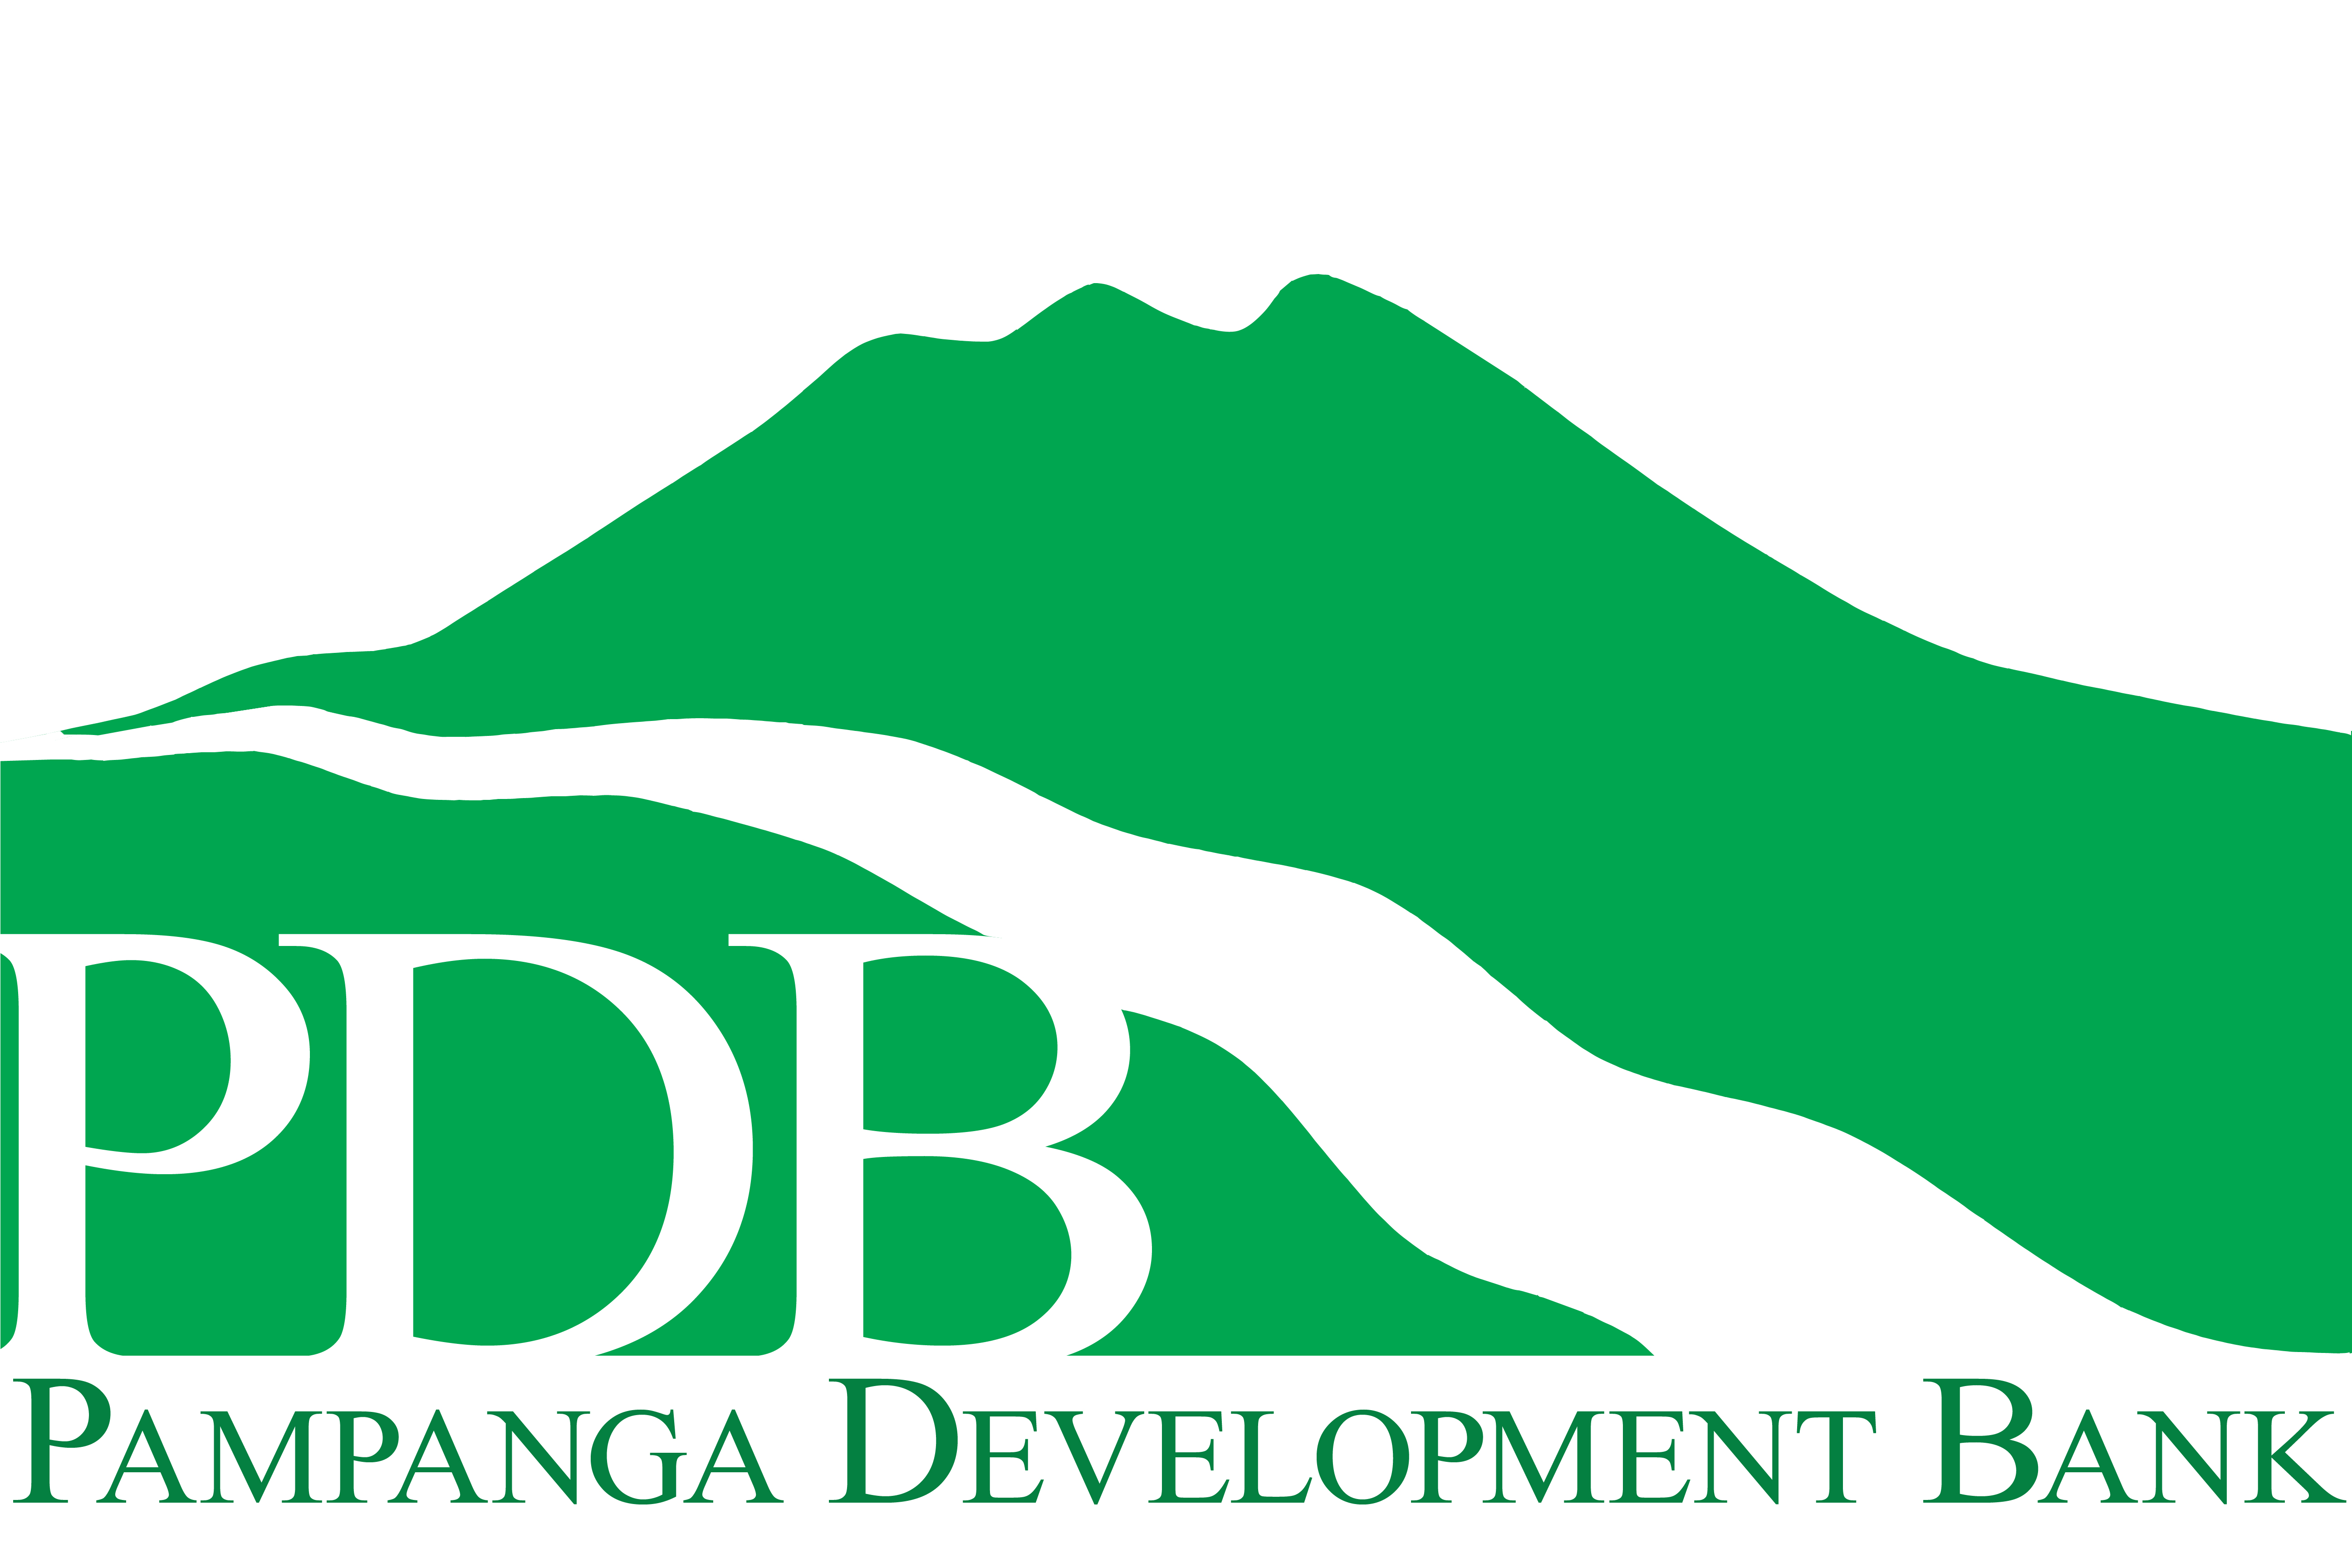 Pampanga Development Bank